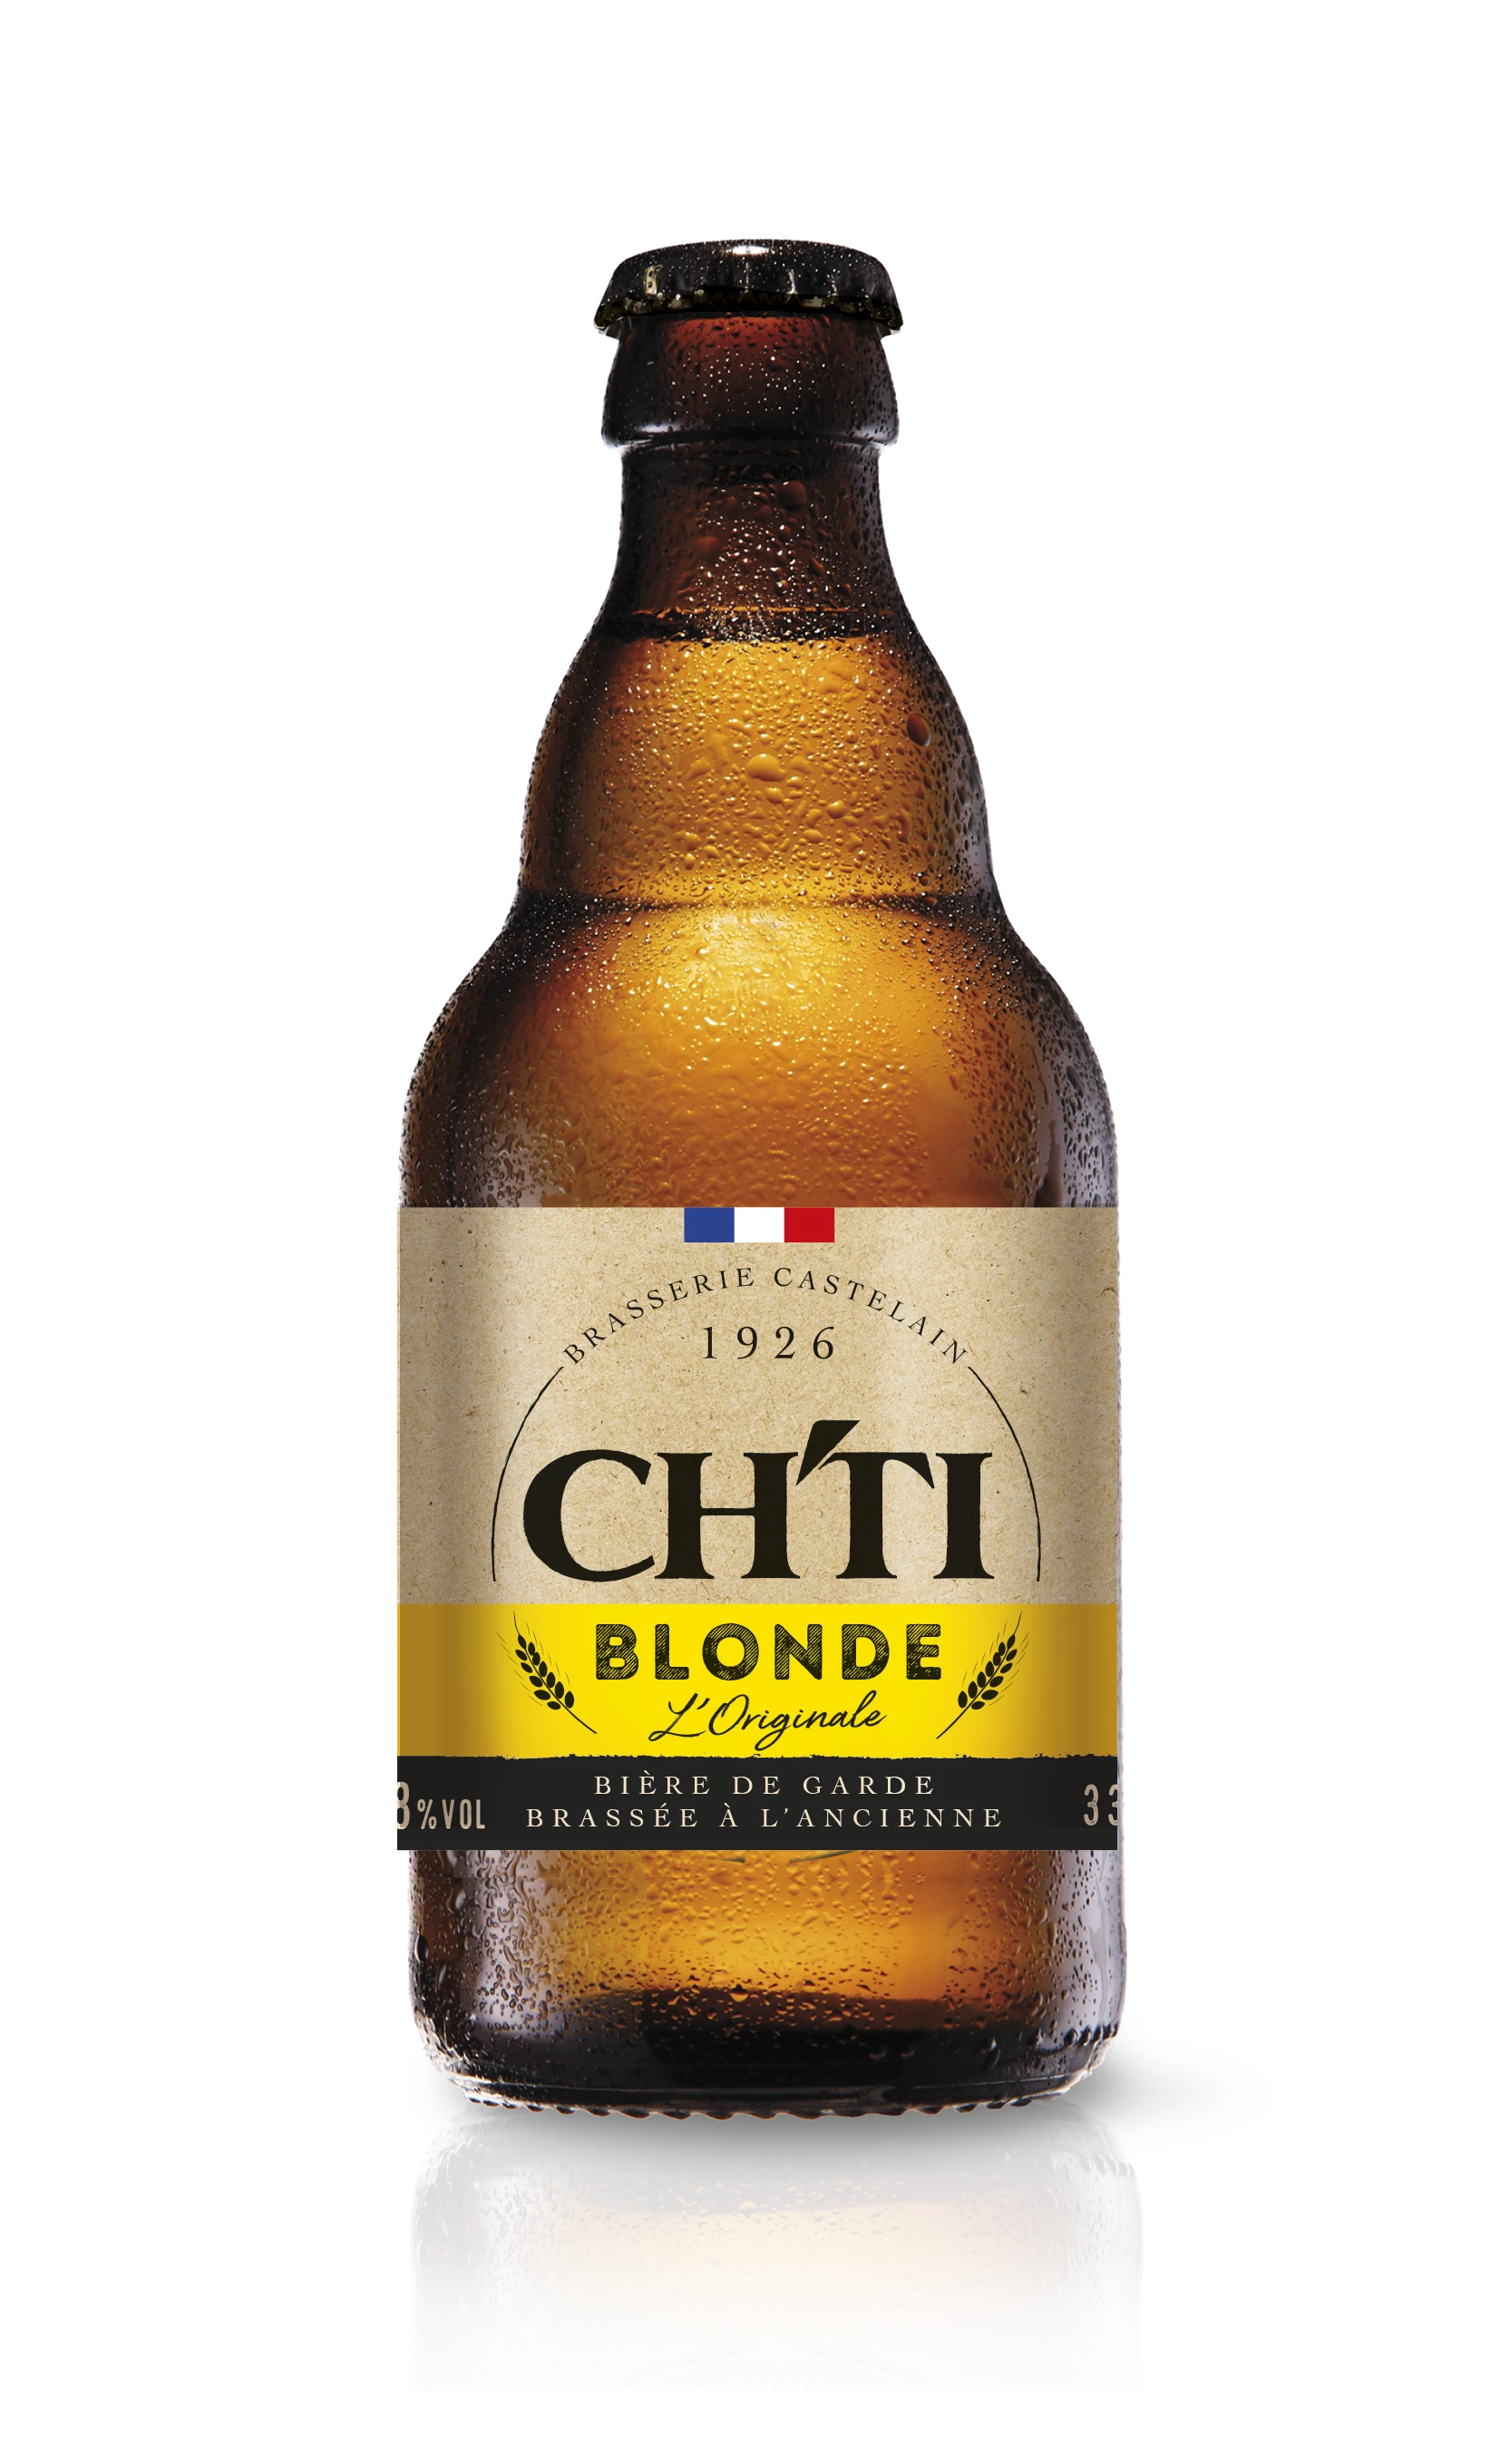 Bia Blonde nguyên bản, 6°8, 33cl - CH'TI